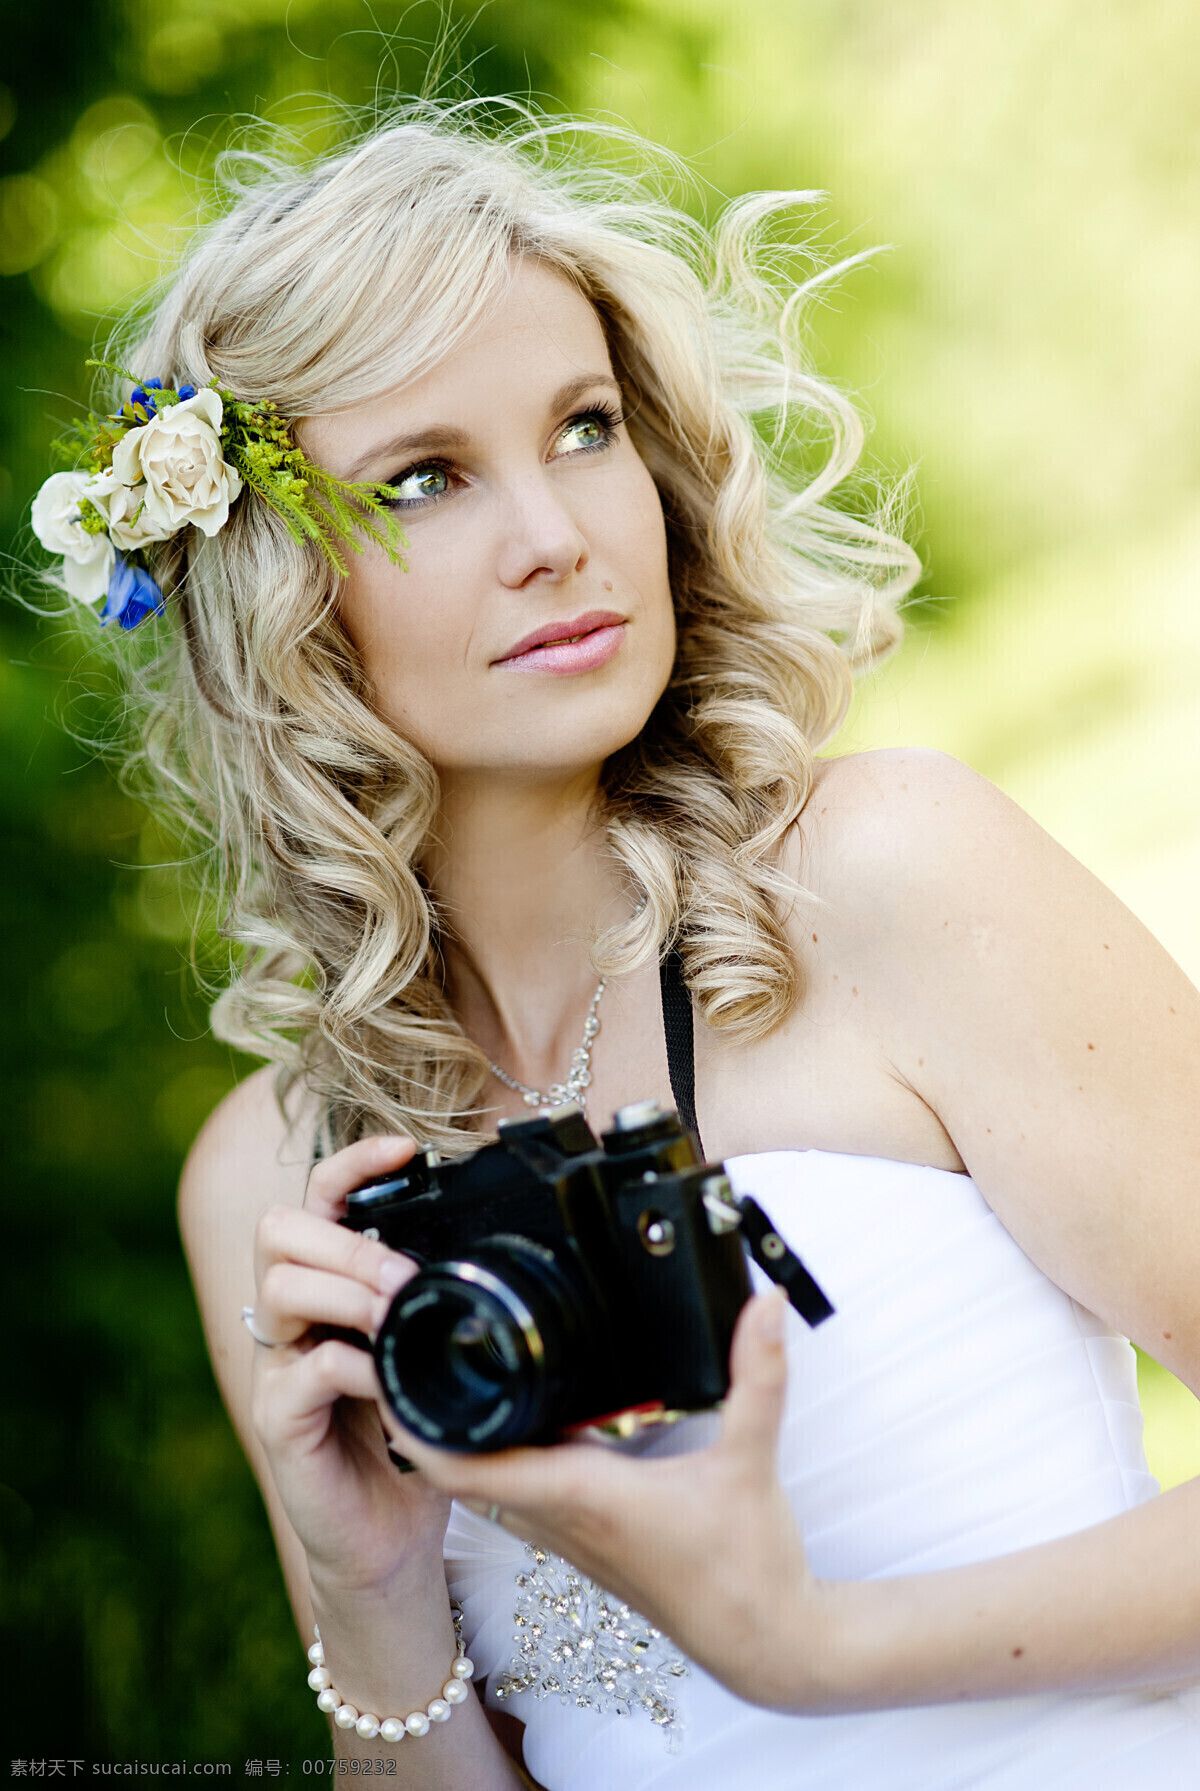 相机 美女图片 拿着 美女 新娘 婚礼 结婚 情侣图片 人物图片